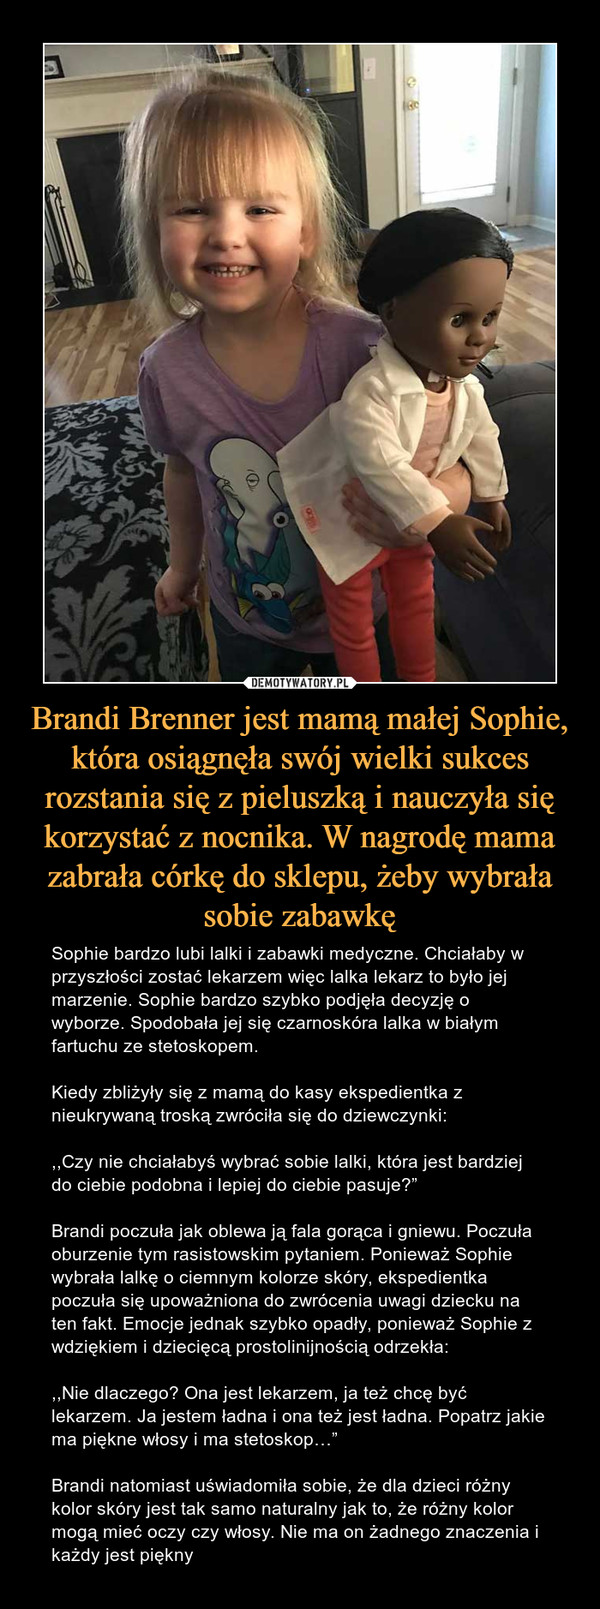 Brandi Brenner jest mamą małej Sophie, która osiągnęła swój wielki sukces rozstania się z pieluszką i nauczyła się korzystać z nocnika. W nagrodę mama zabrała córkę do sklepu, żeby wybrała sobie zabawkę